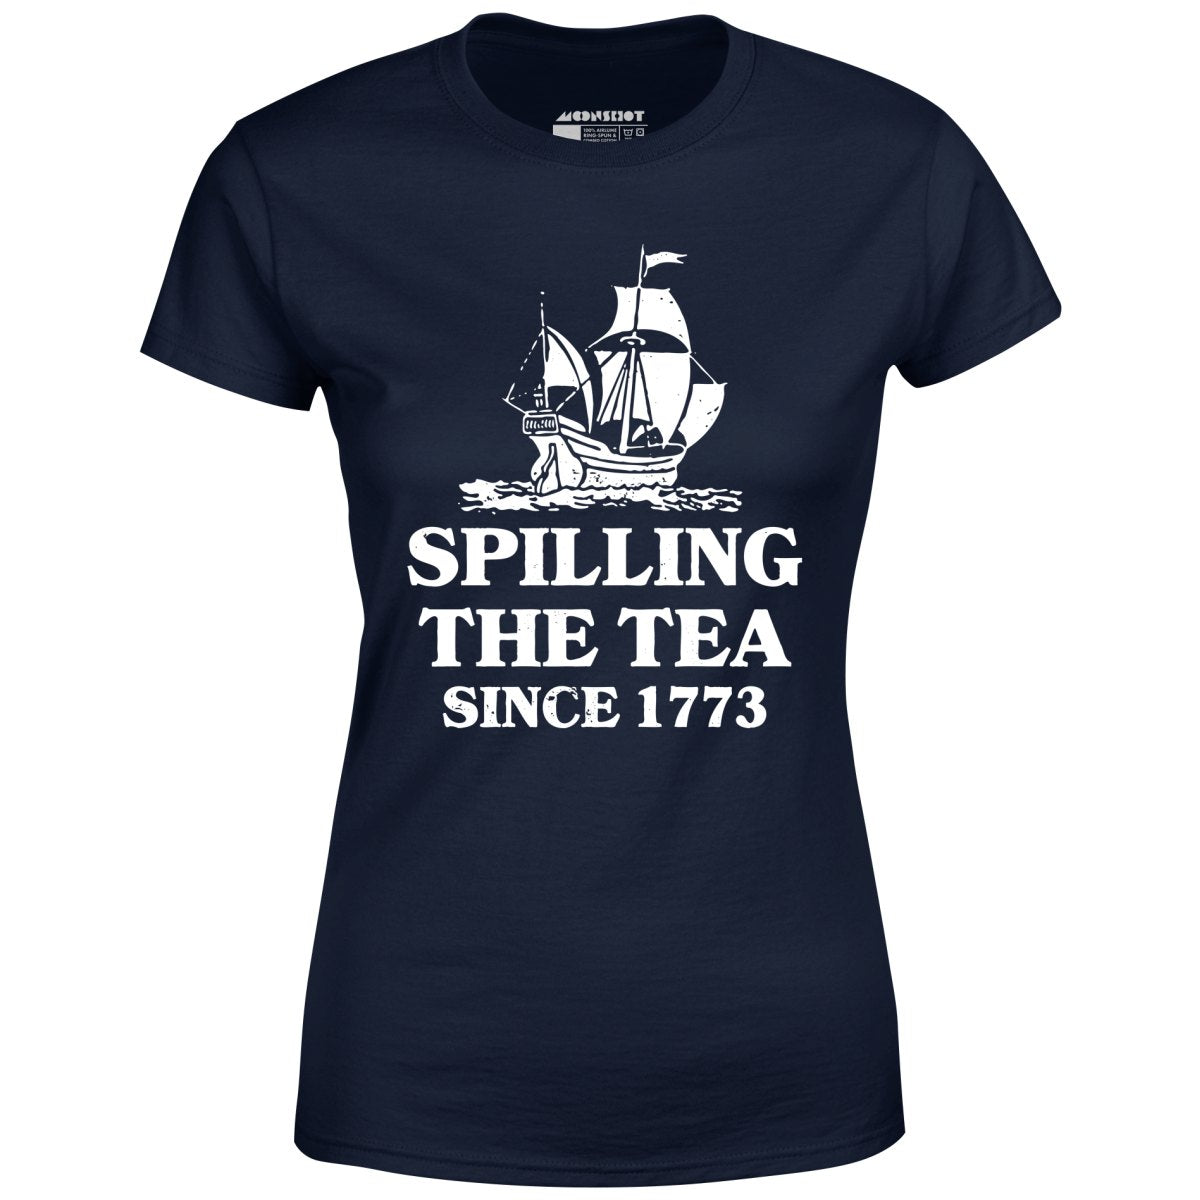 Spilling The Tea Since 1773 - Women's T-Shirt